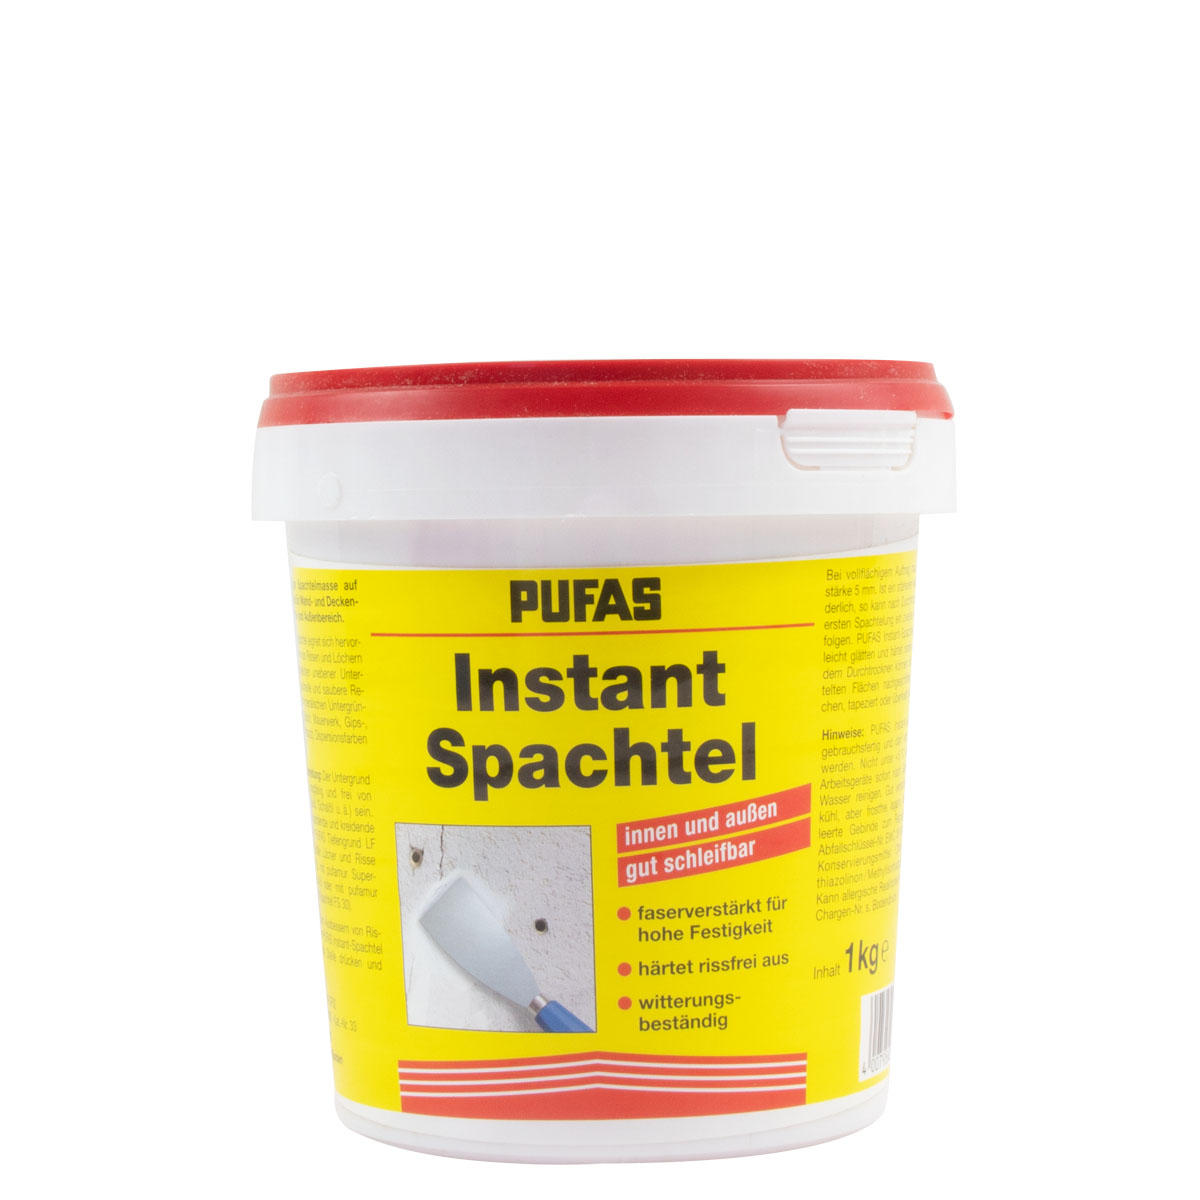 Pufas Instant-Spachtel 1Kg ,Schnellspachtel für innen und außen